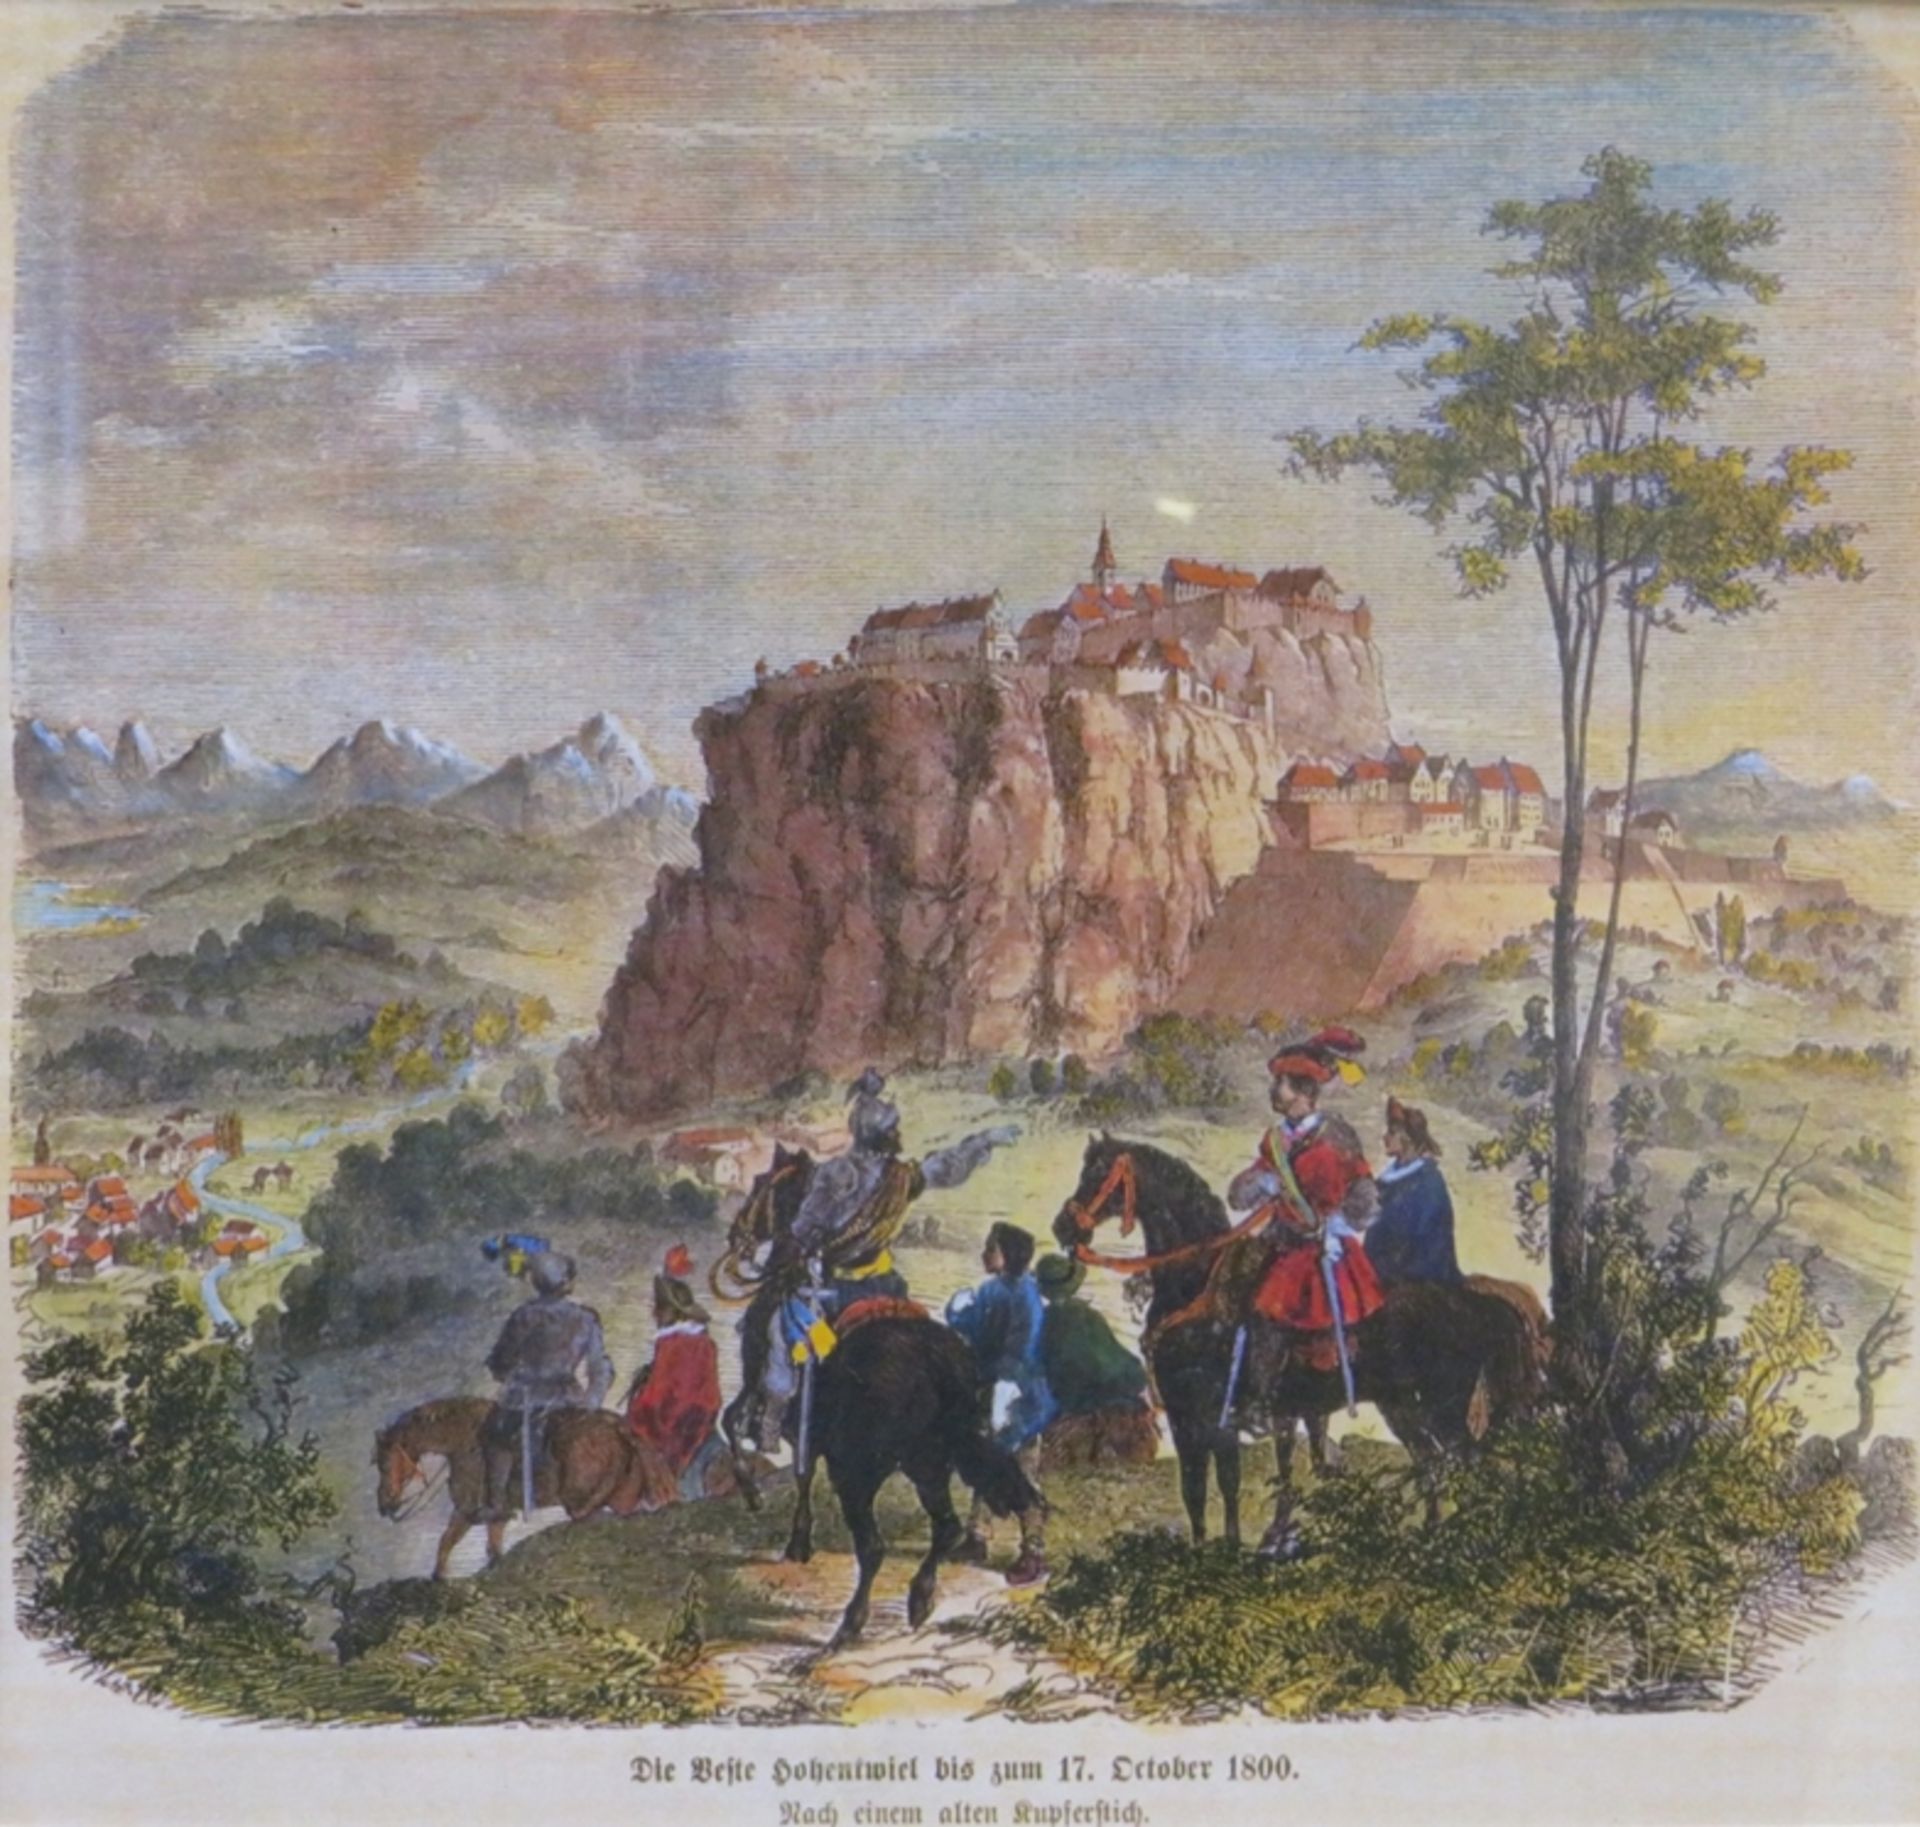 Holzstich, 19. Jahrhundert, "Die Feste Hohentwiel bis zum 17. October 1800", altcol., 18 x 19,5 cm,